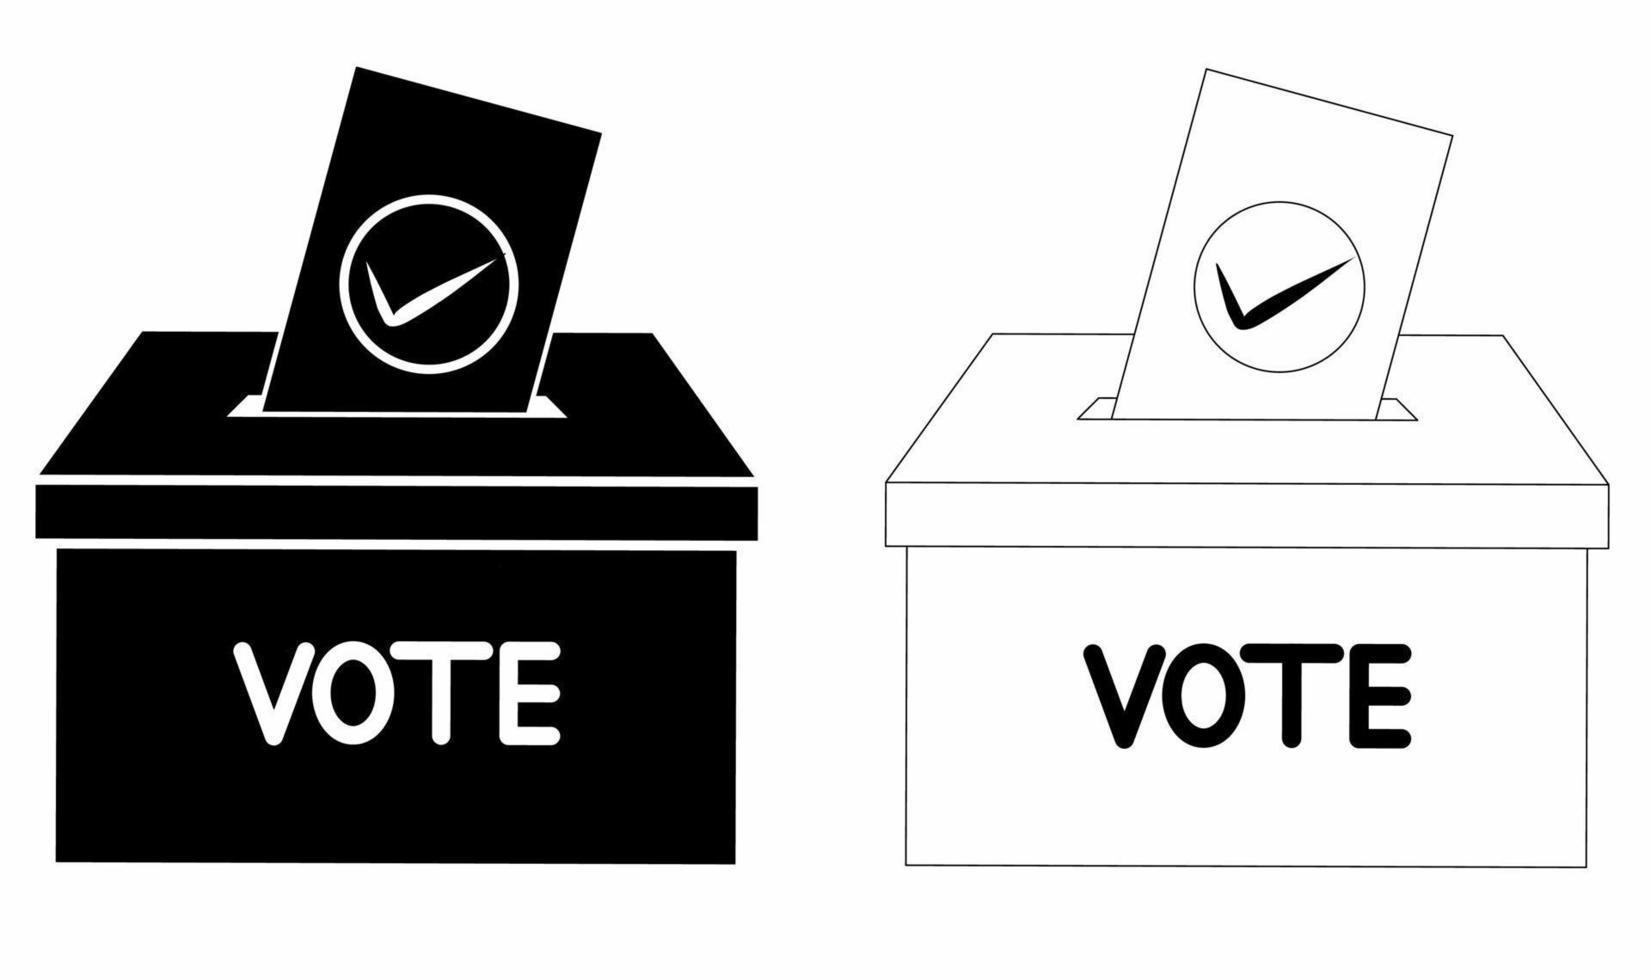 Umriss Silhouette Abstimmung Wahlurne Symbolsatz isoliert auf weißem Hintergrund vektor